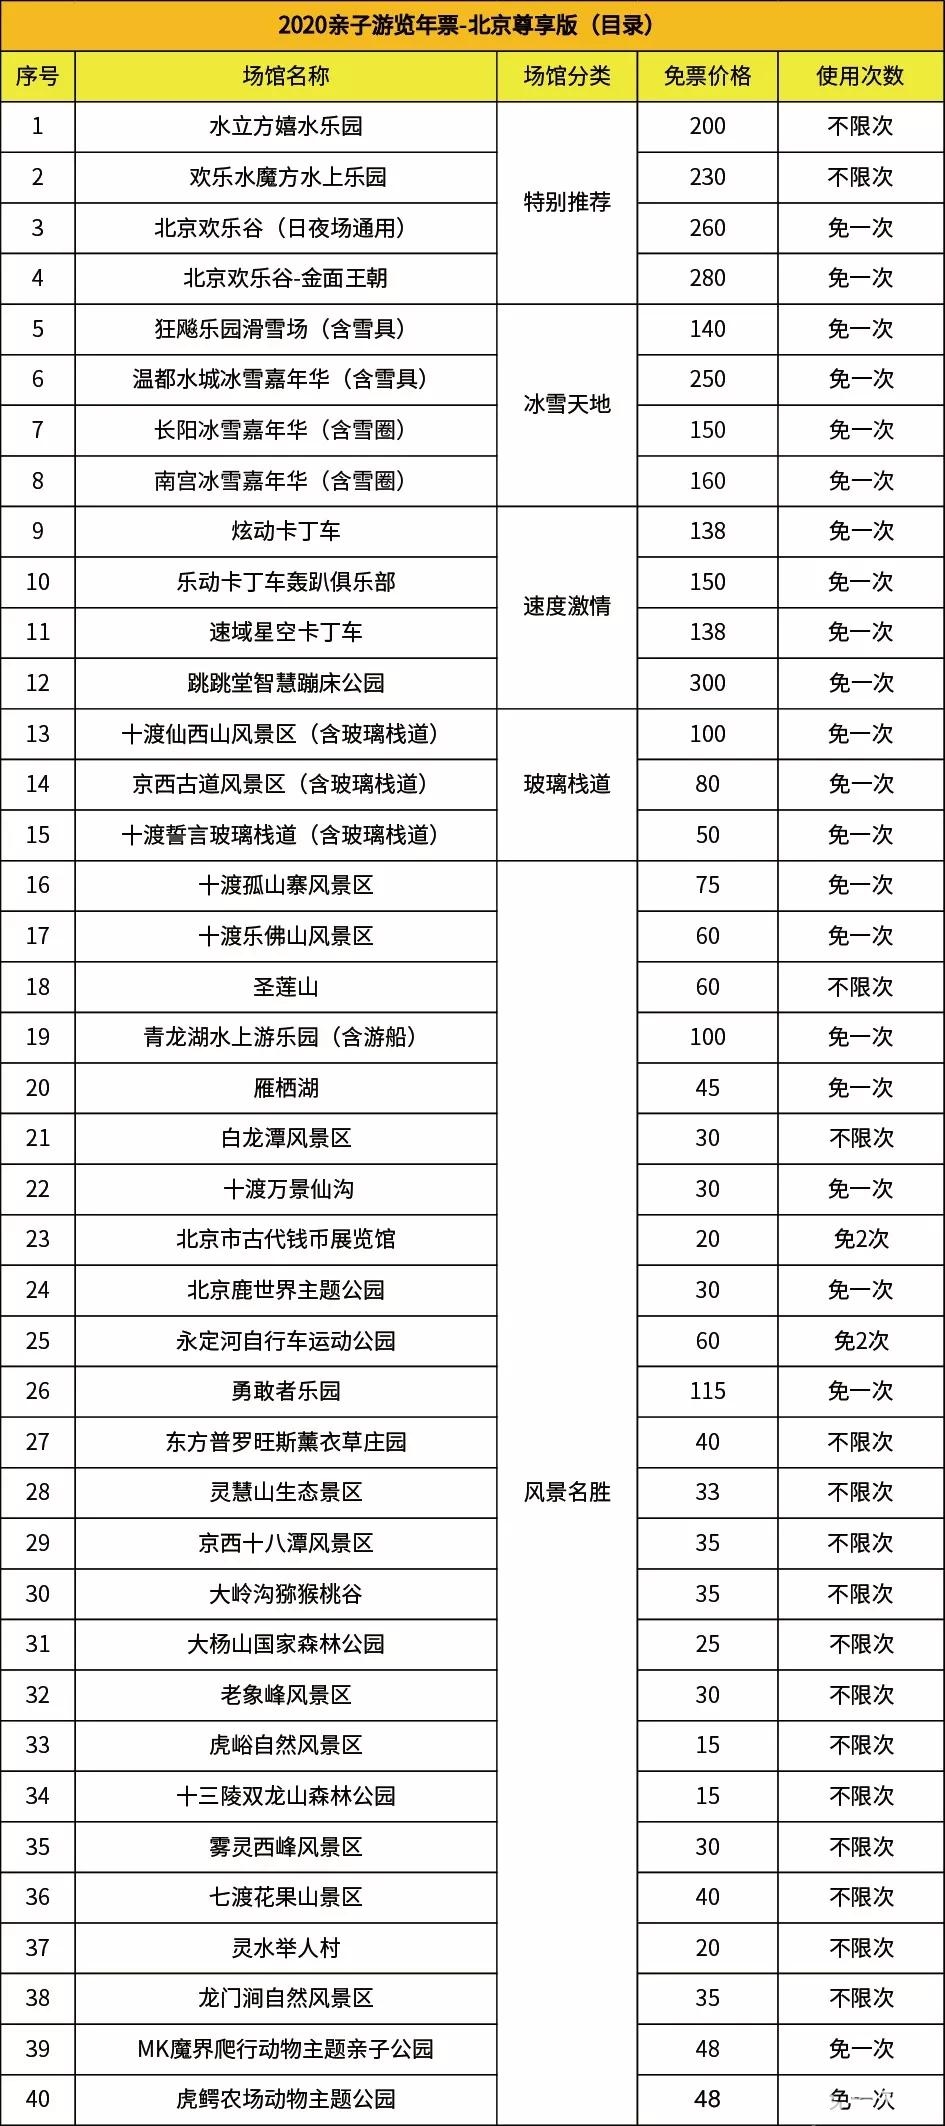 2020北京亲子年票尊享版景区名录（水立方嬉水乐园、欢乐水魔方水上乐园不限次畅玩）[墙根网]